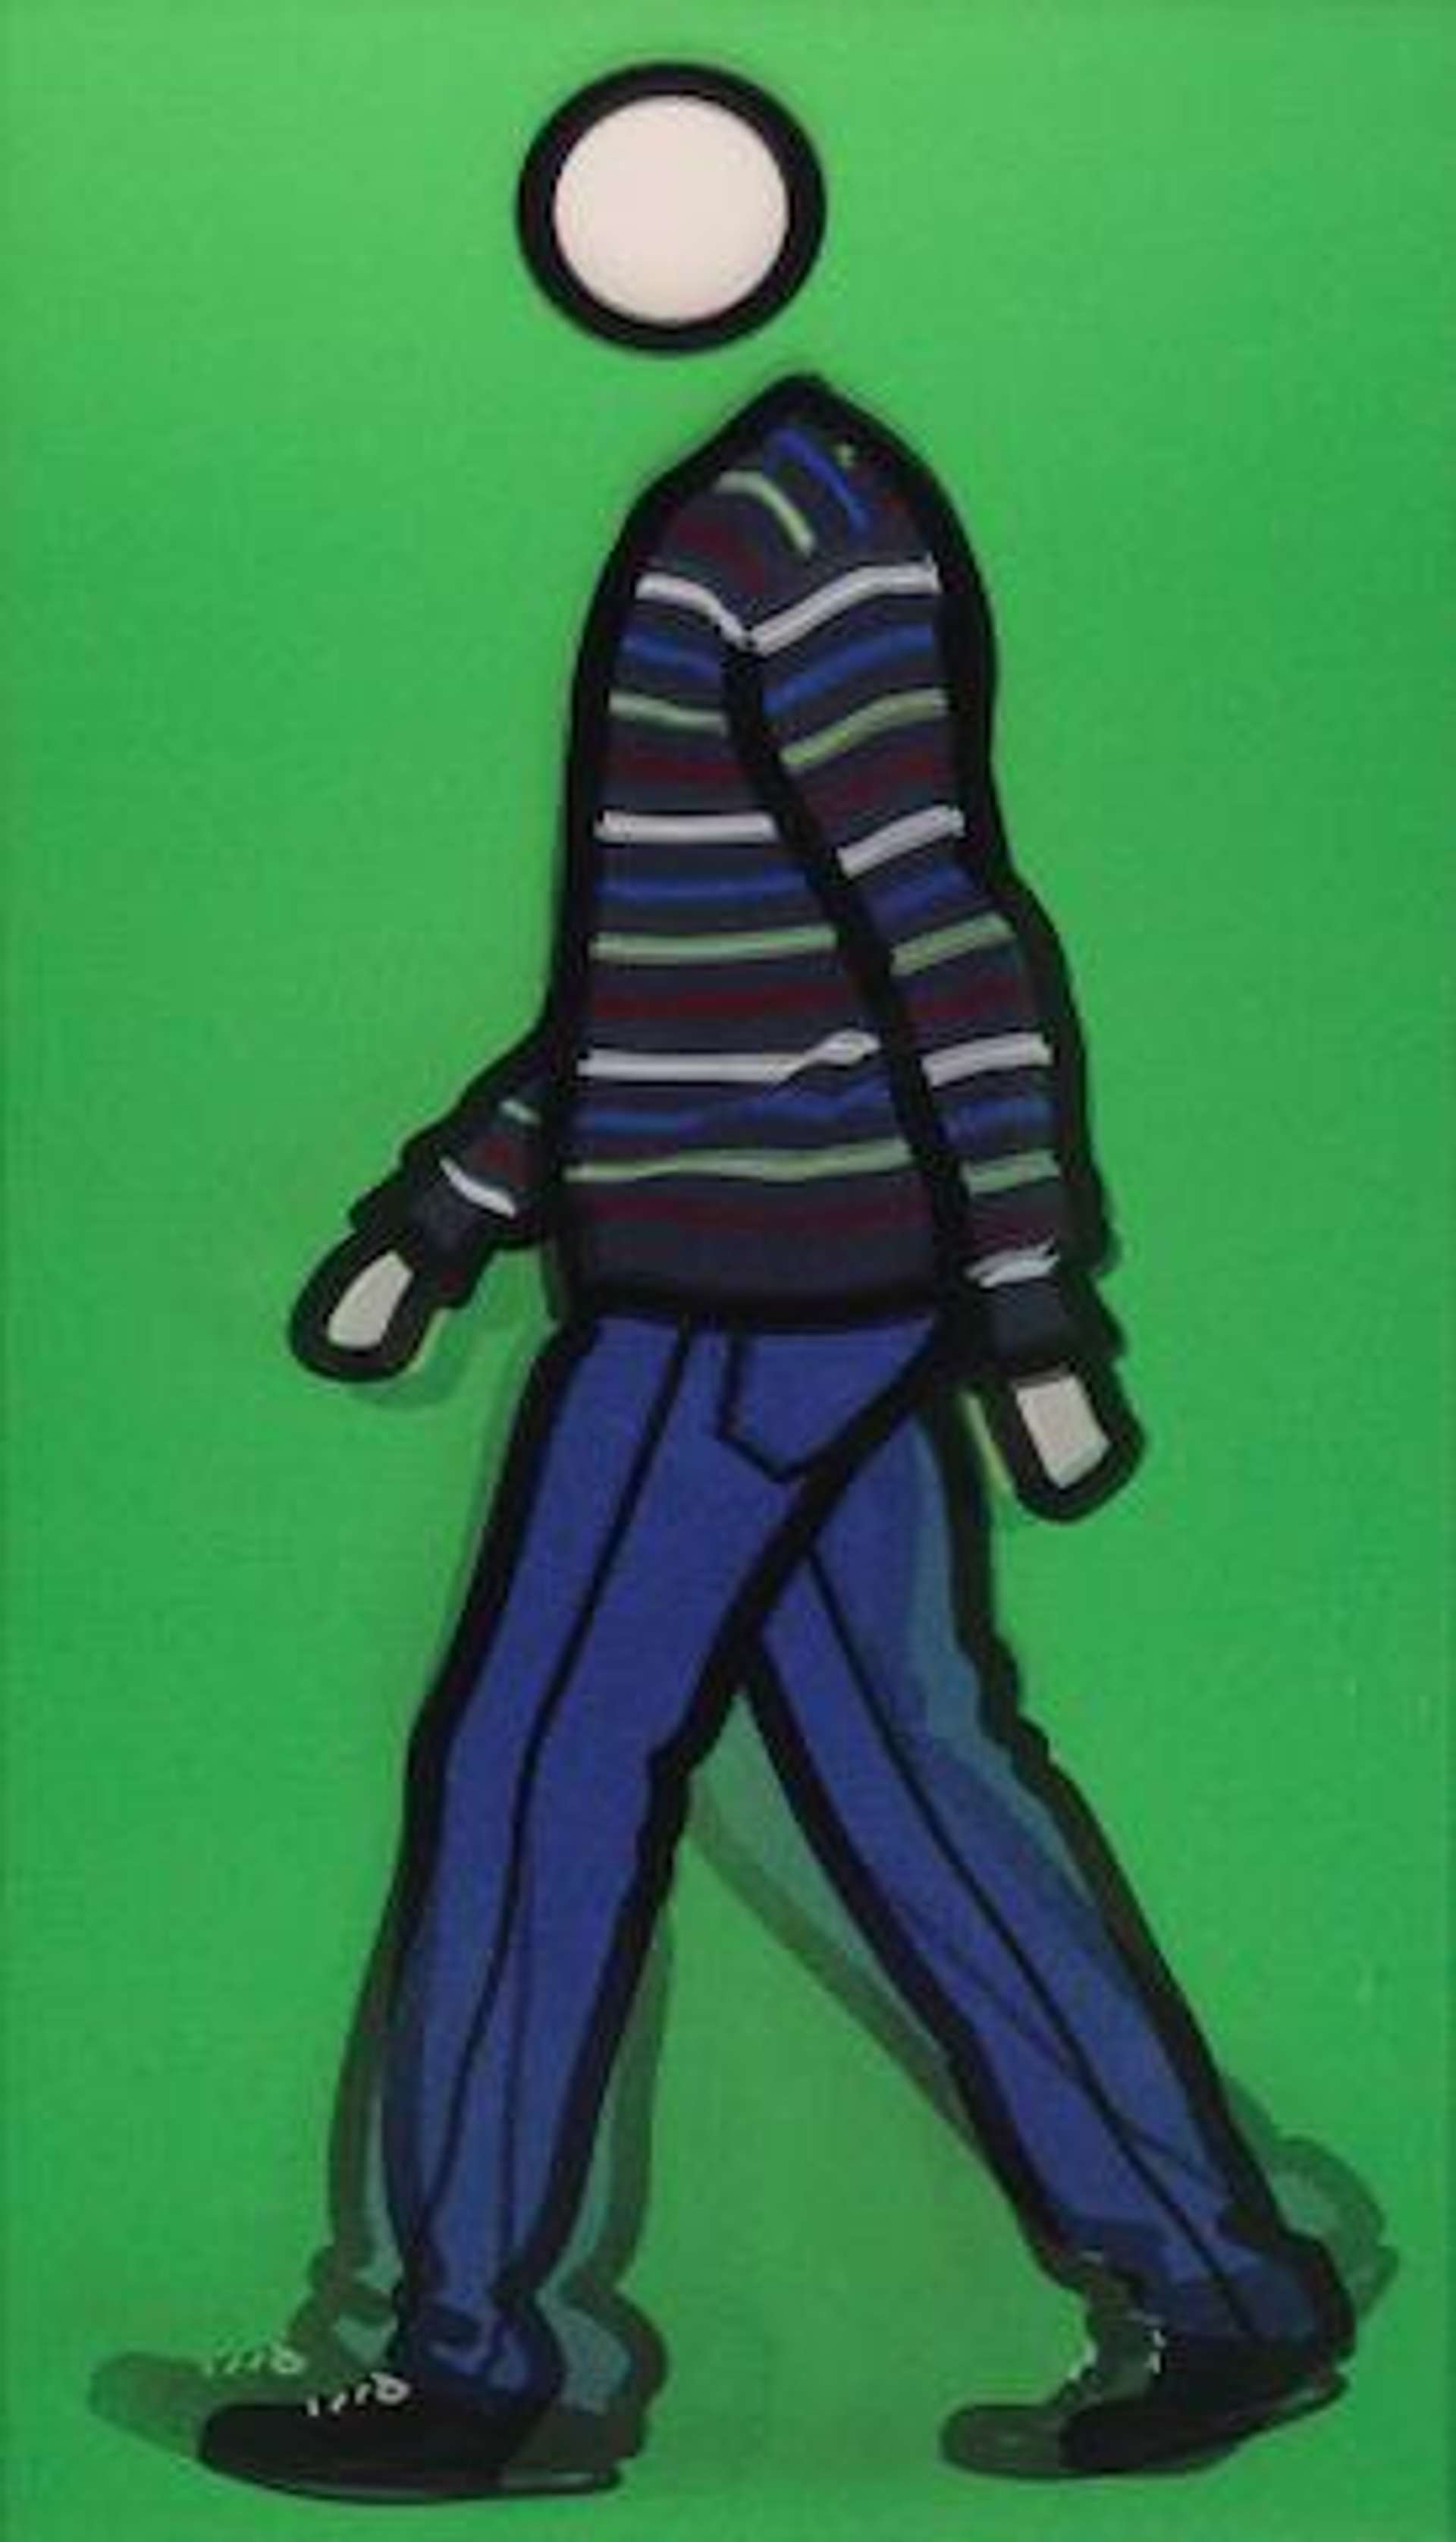 Jeremy Walking in Stripy Jumper - Signed Print by Julian Opie 2010 - MyArtBroker